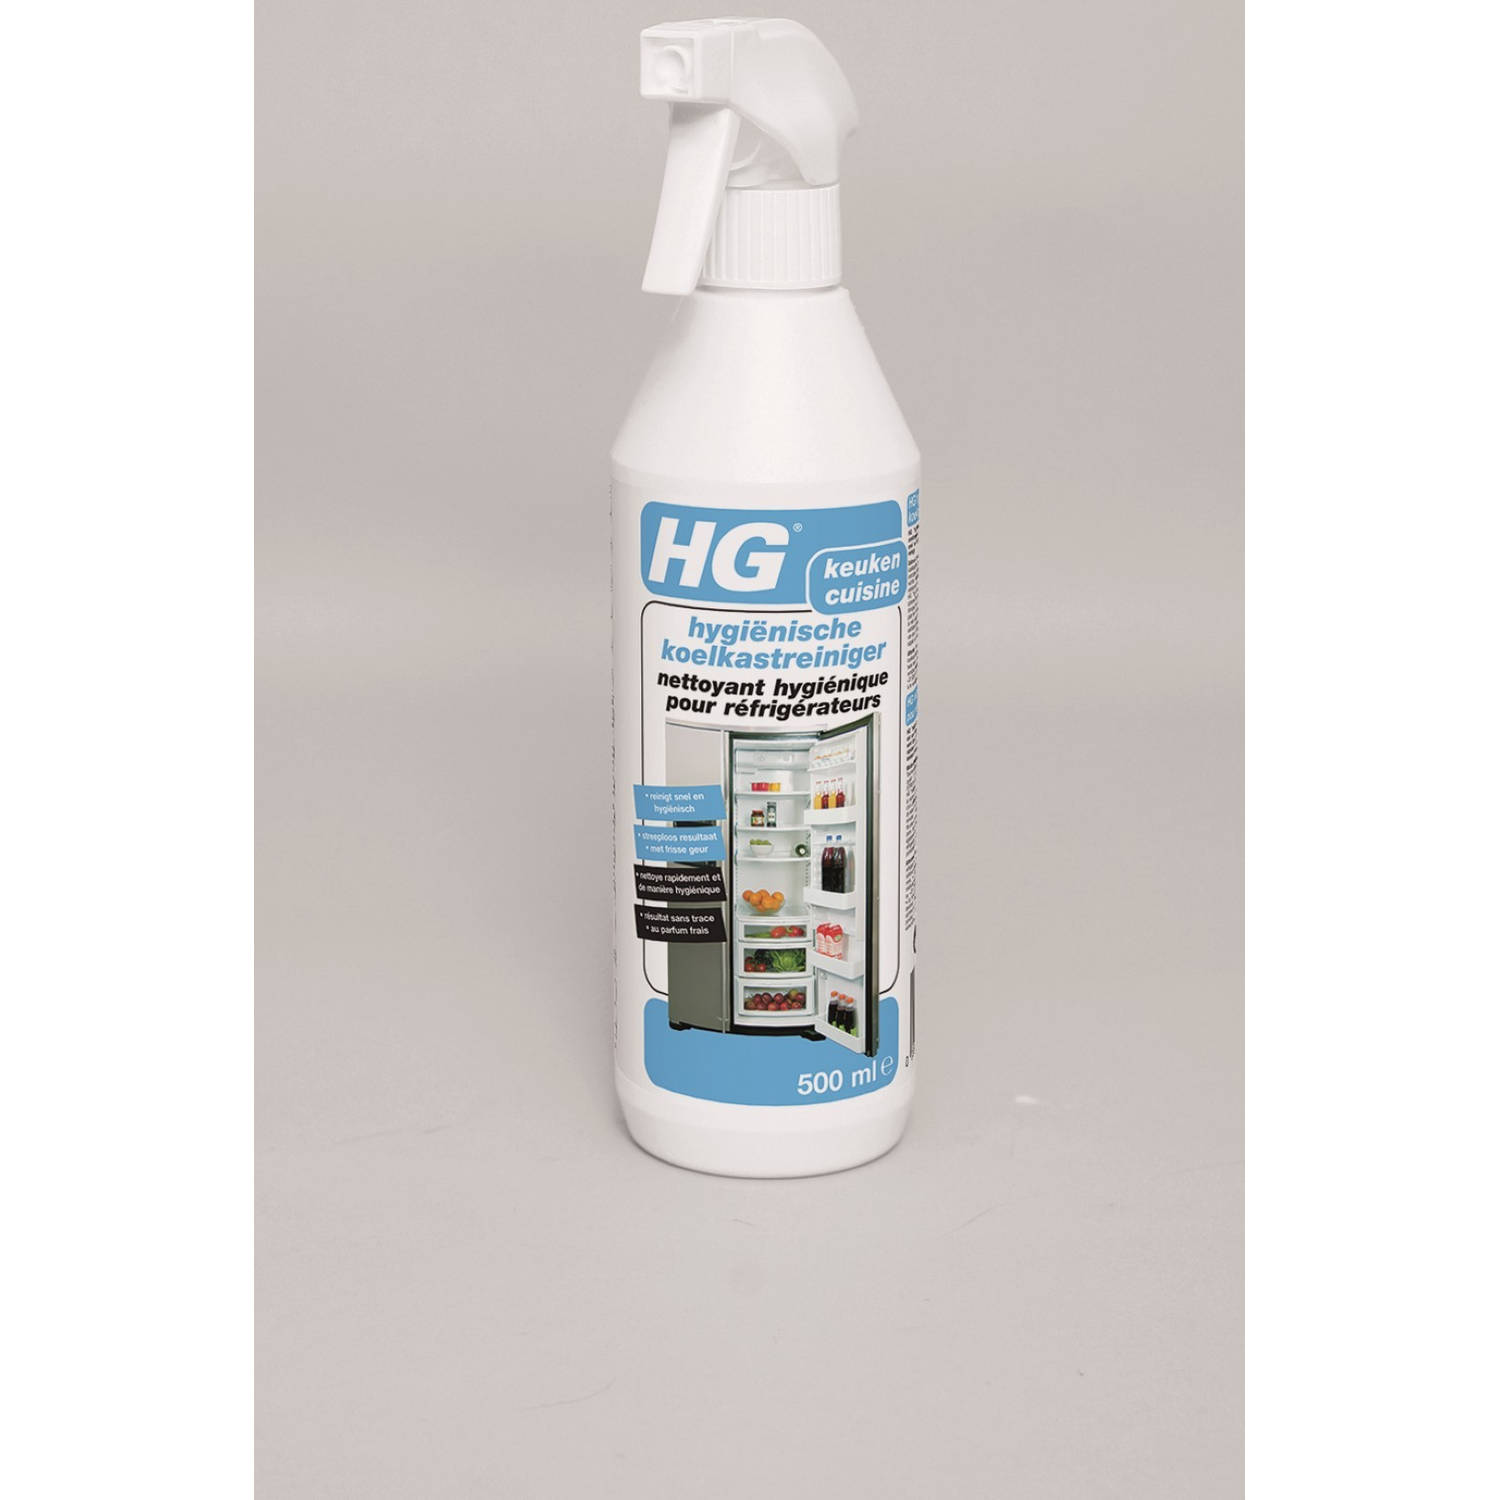 HG - 2 stuks hygienische koelkastreiniger